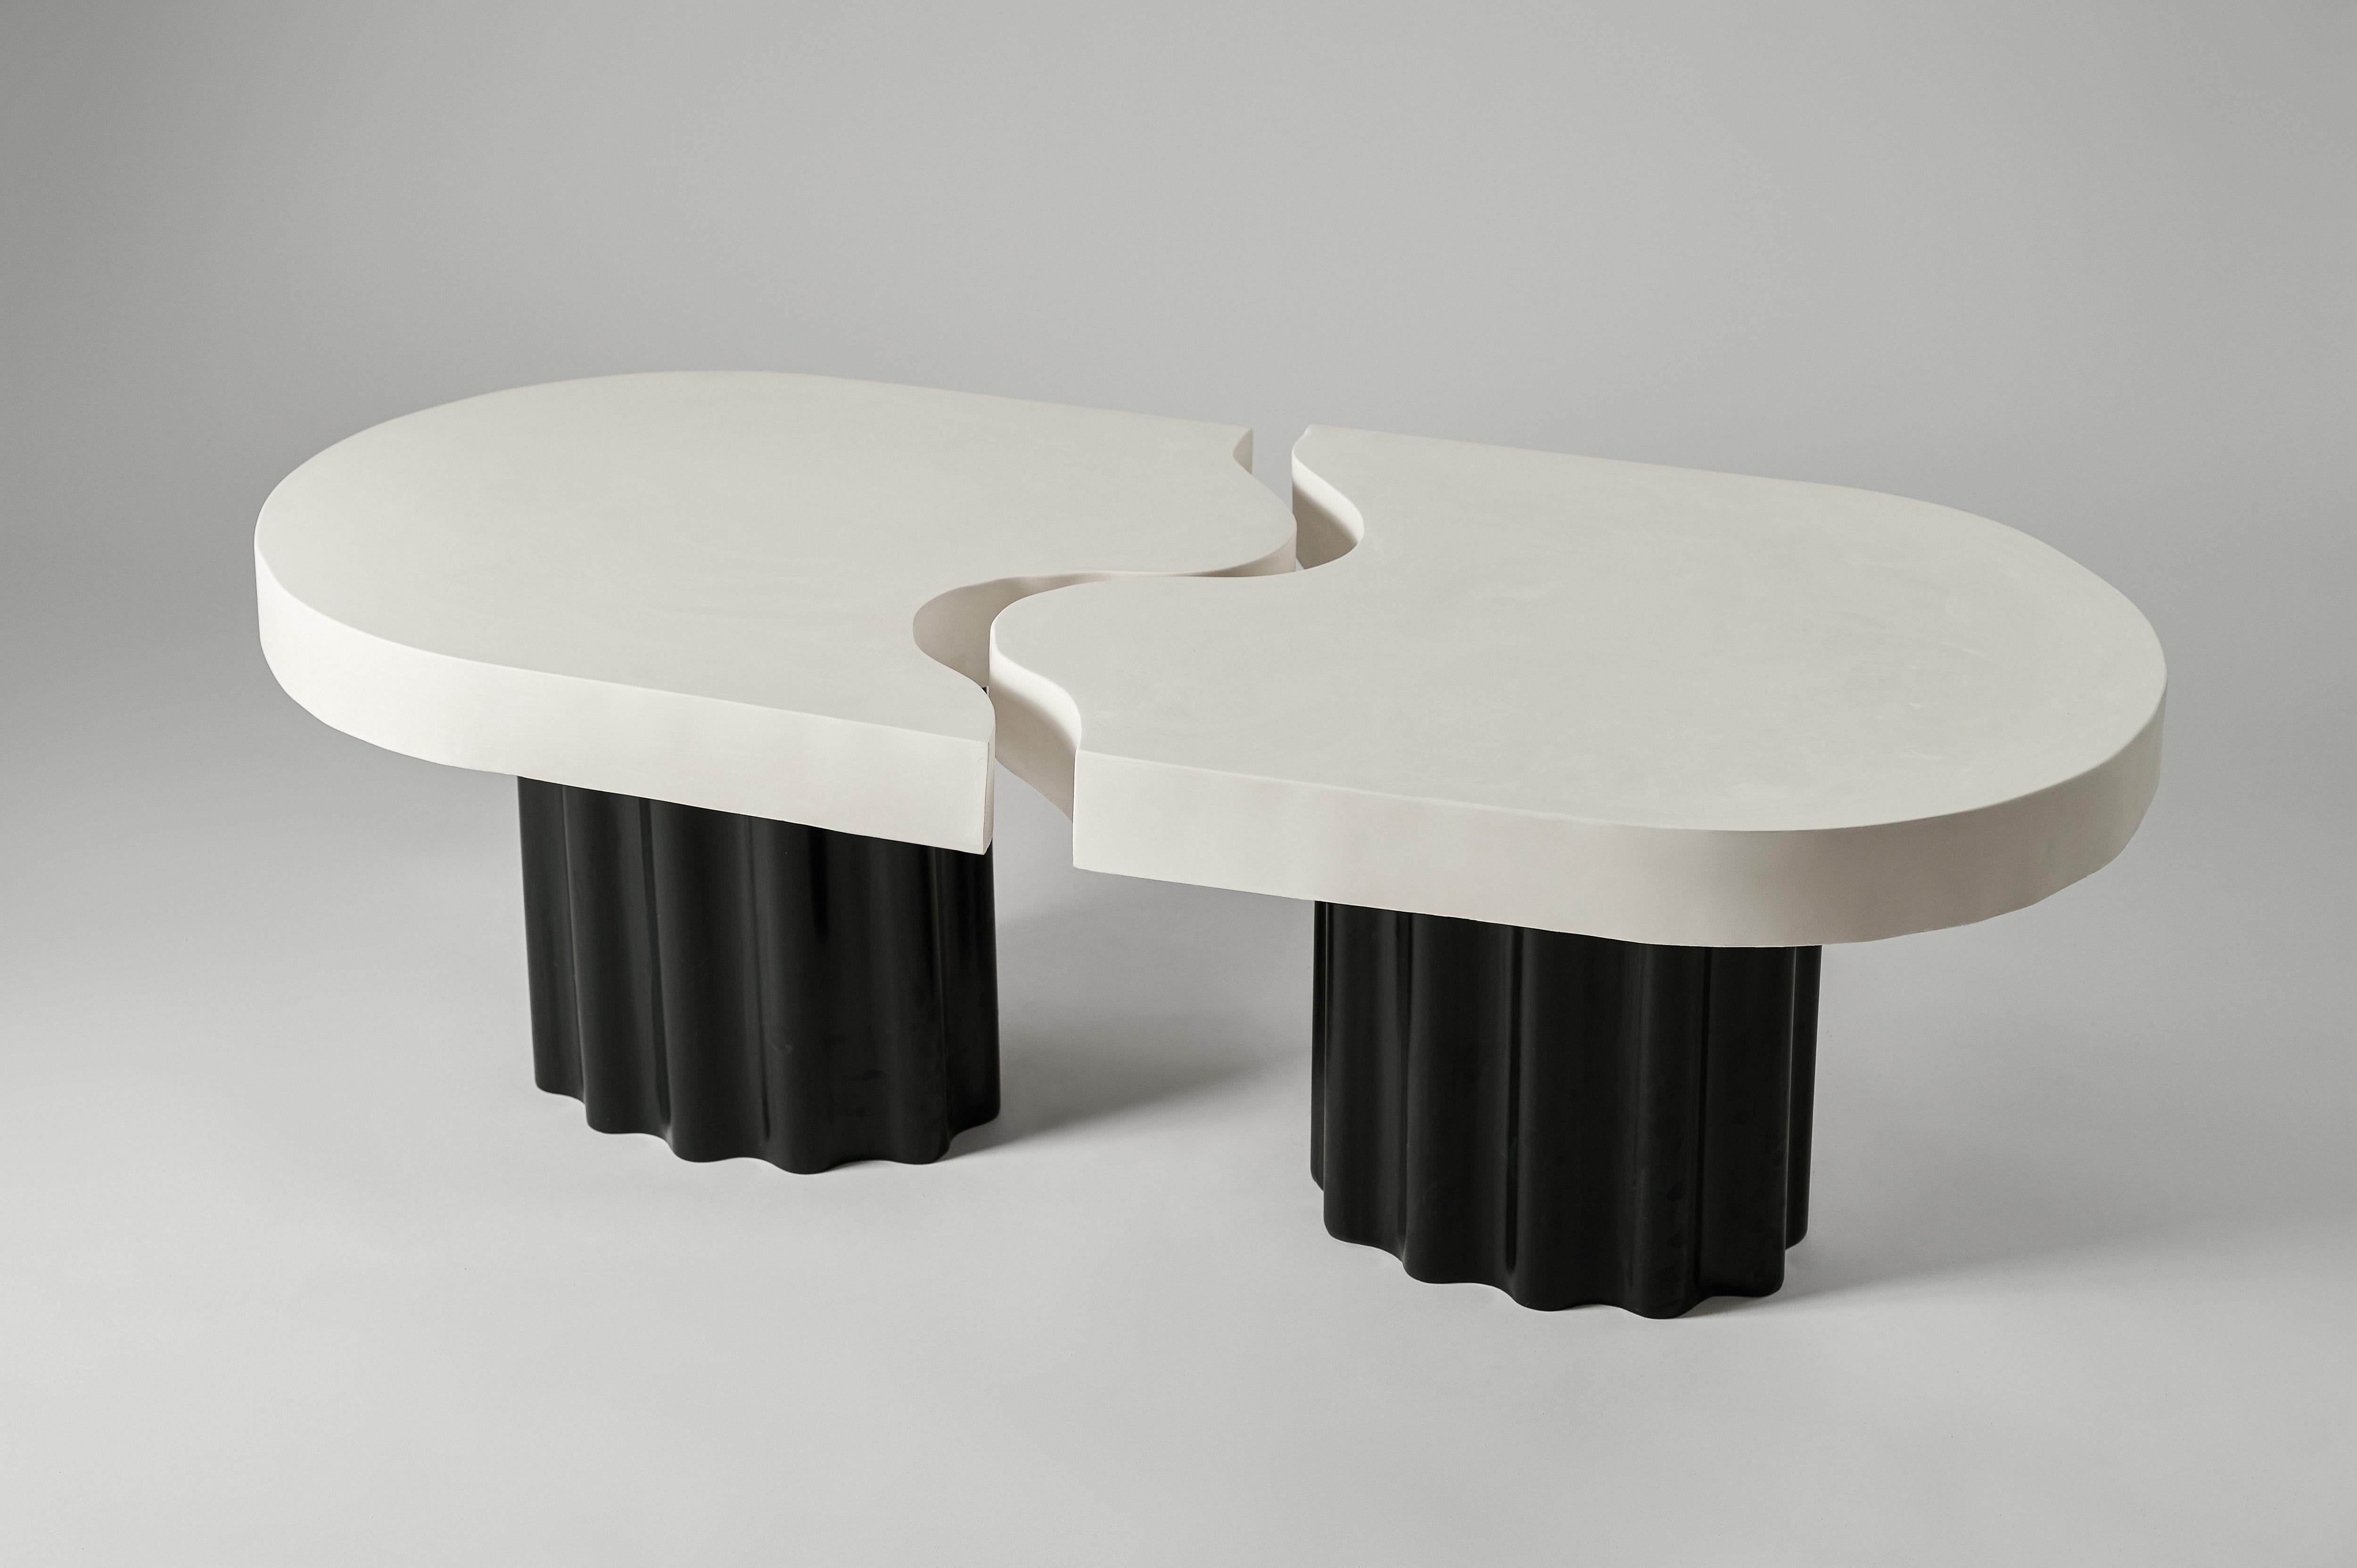 Ensemble de 2 tables basses Puzzle n° 2 de Perler
Dimensions : Une table : D 58 x L 67 x H 40 cm.
Les deux tables : D 58 x L 120 x H 40 cm.
MATERIAL : Jesmonite.
Poids d'une seule table : 15-20 kg.

La hauteur de ces tables est personnalisable.